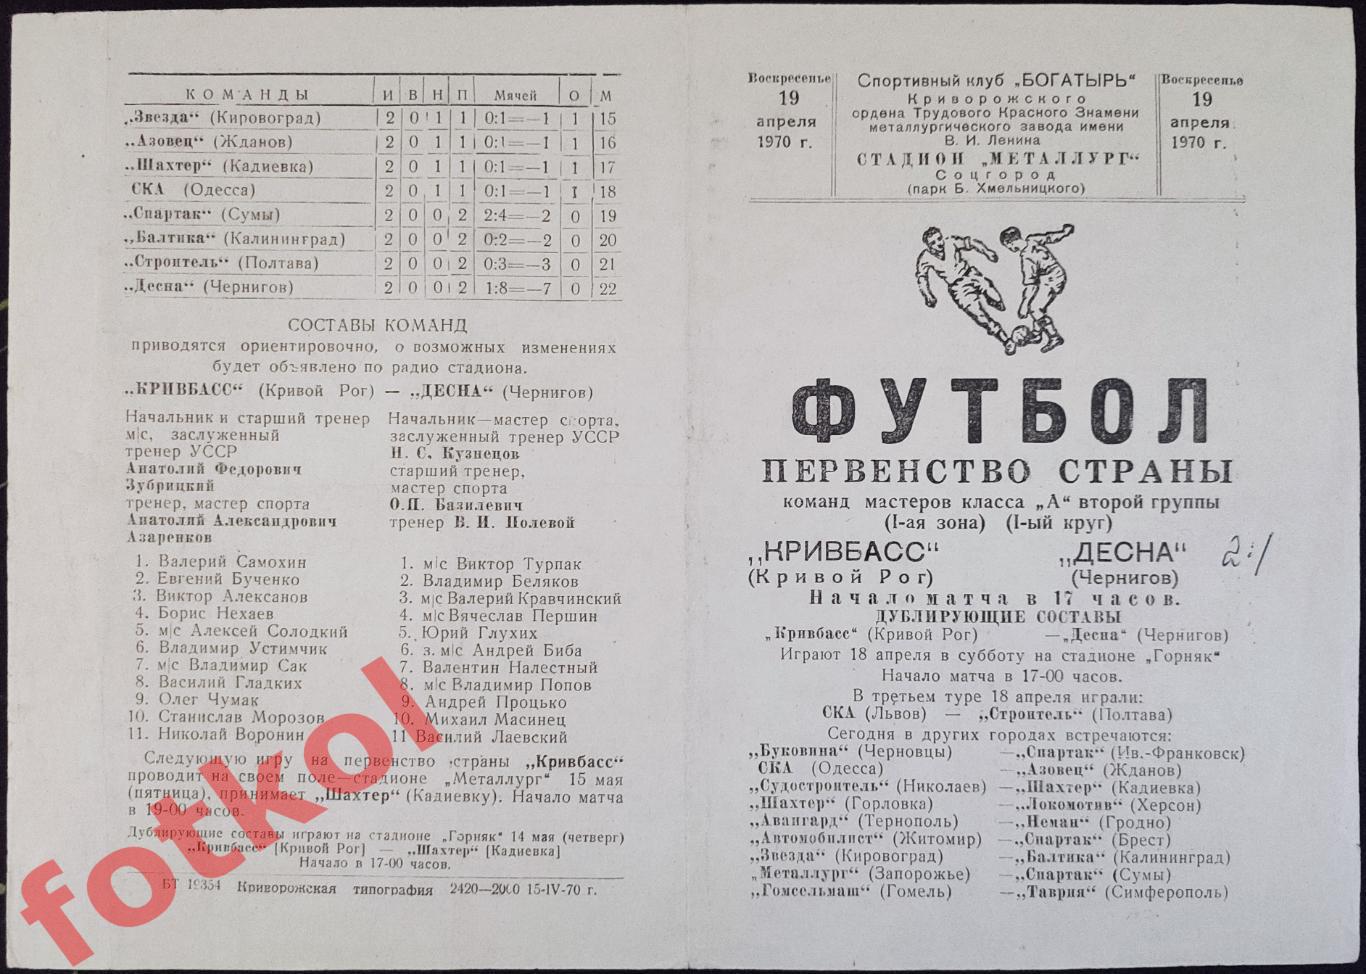 КРИВБАСС Кривой Рог - ДЕСНА Чернигов 19.04.1970